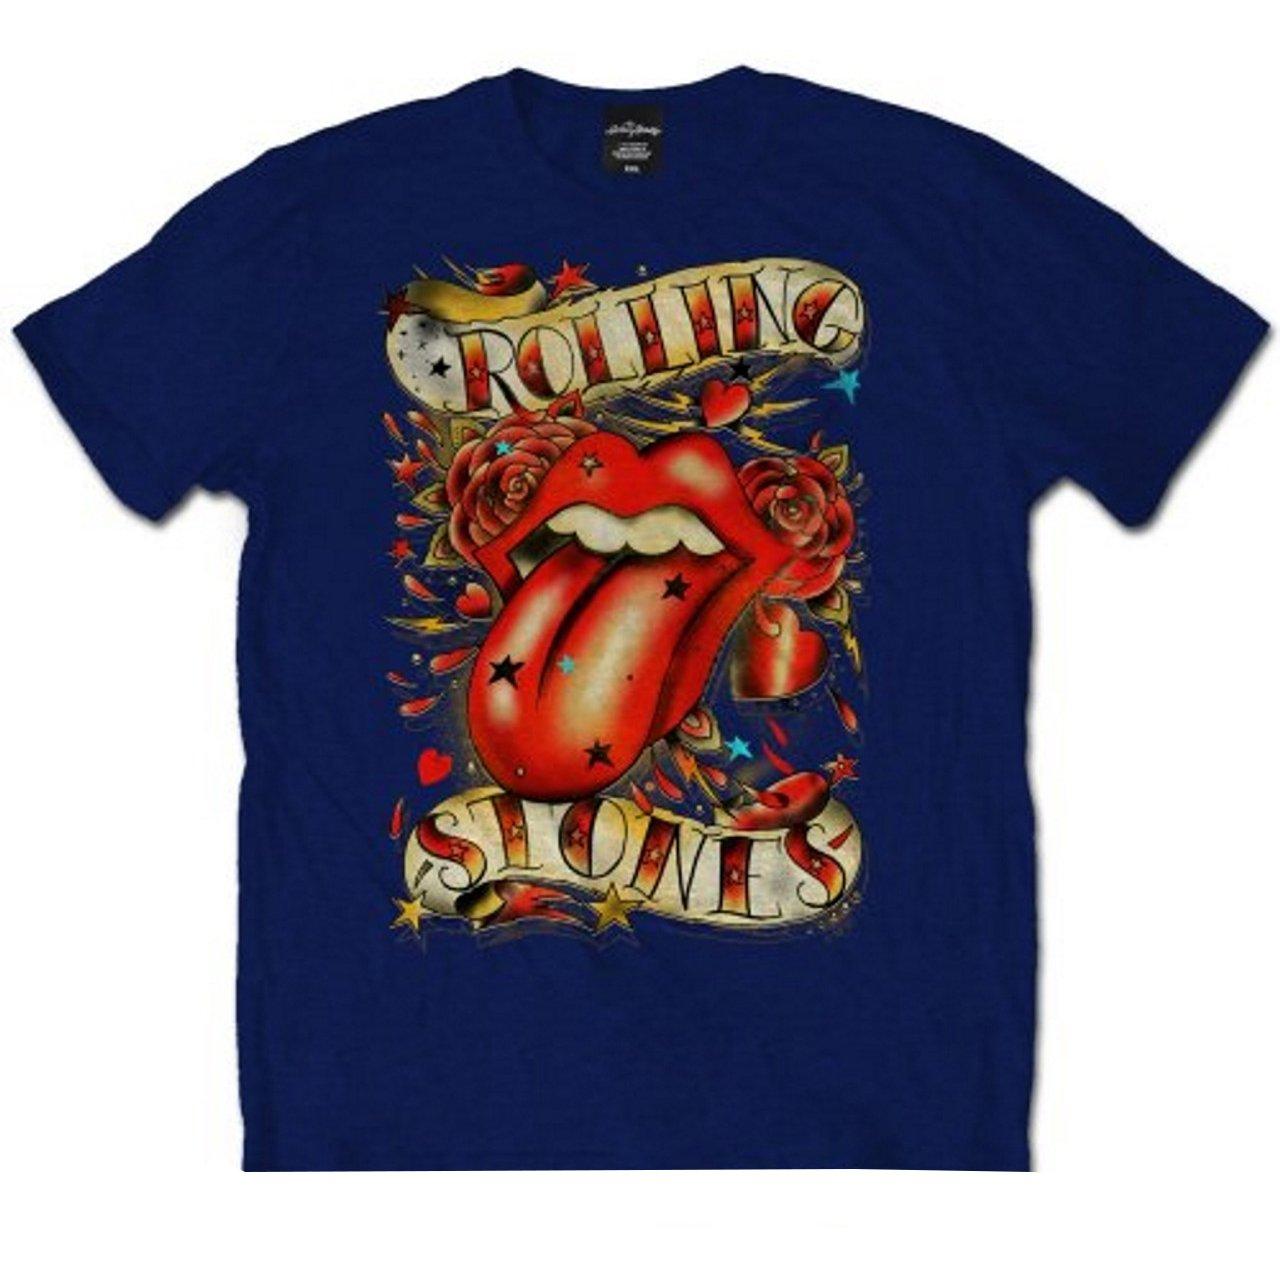 Tshirt Damen Marine S von The Rolling Stones